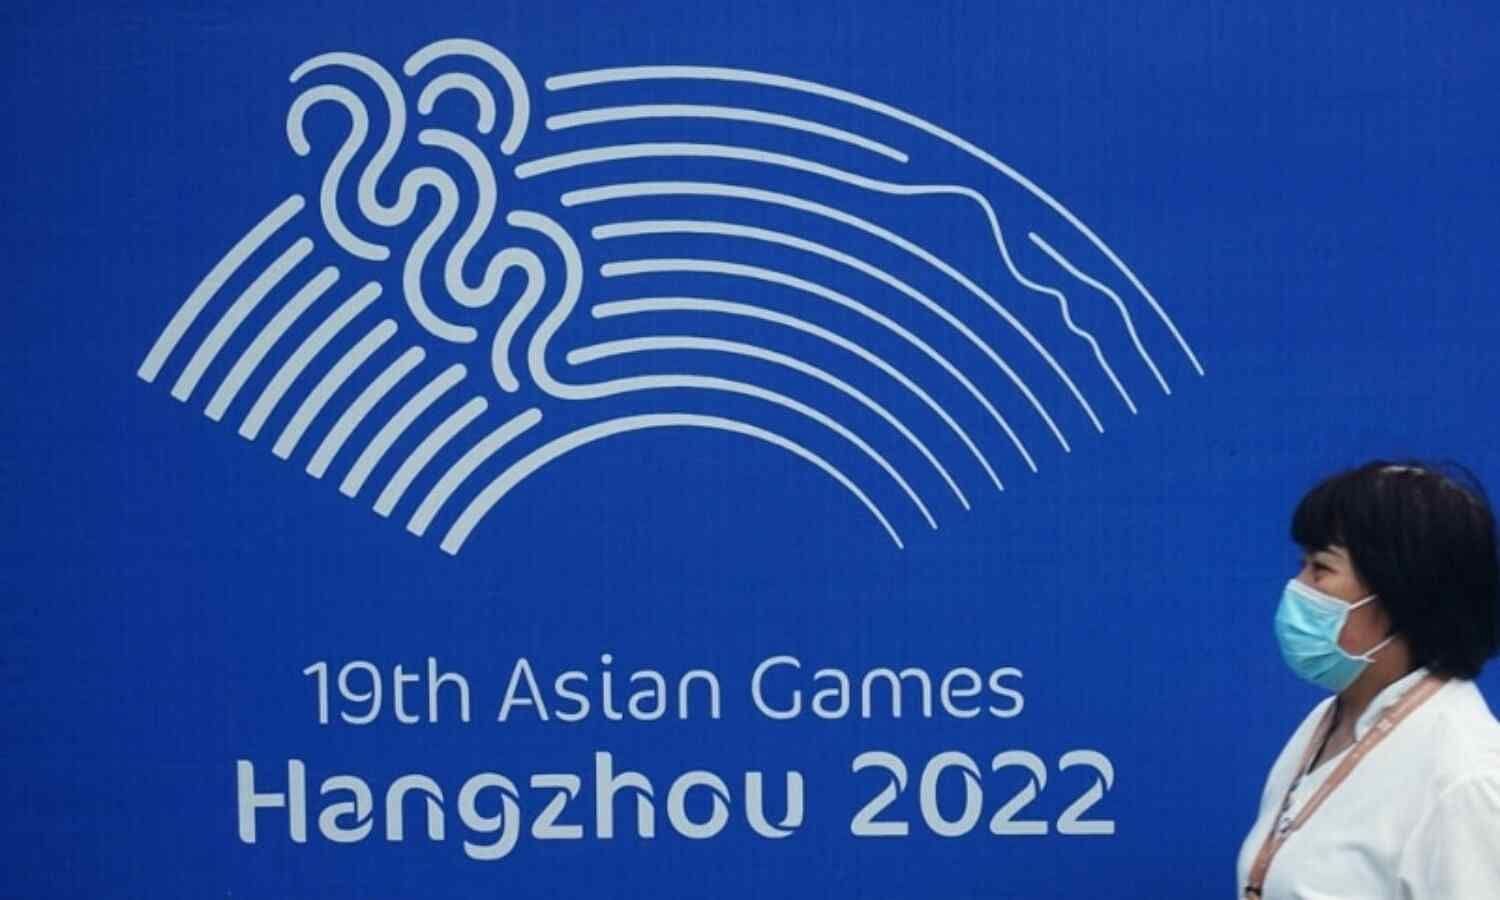 19th Asian Games 2023, Hangzhou, China